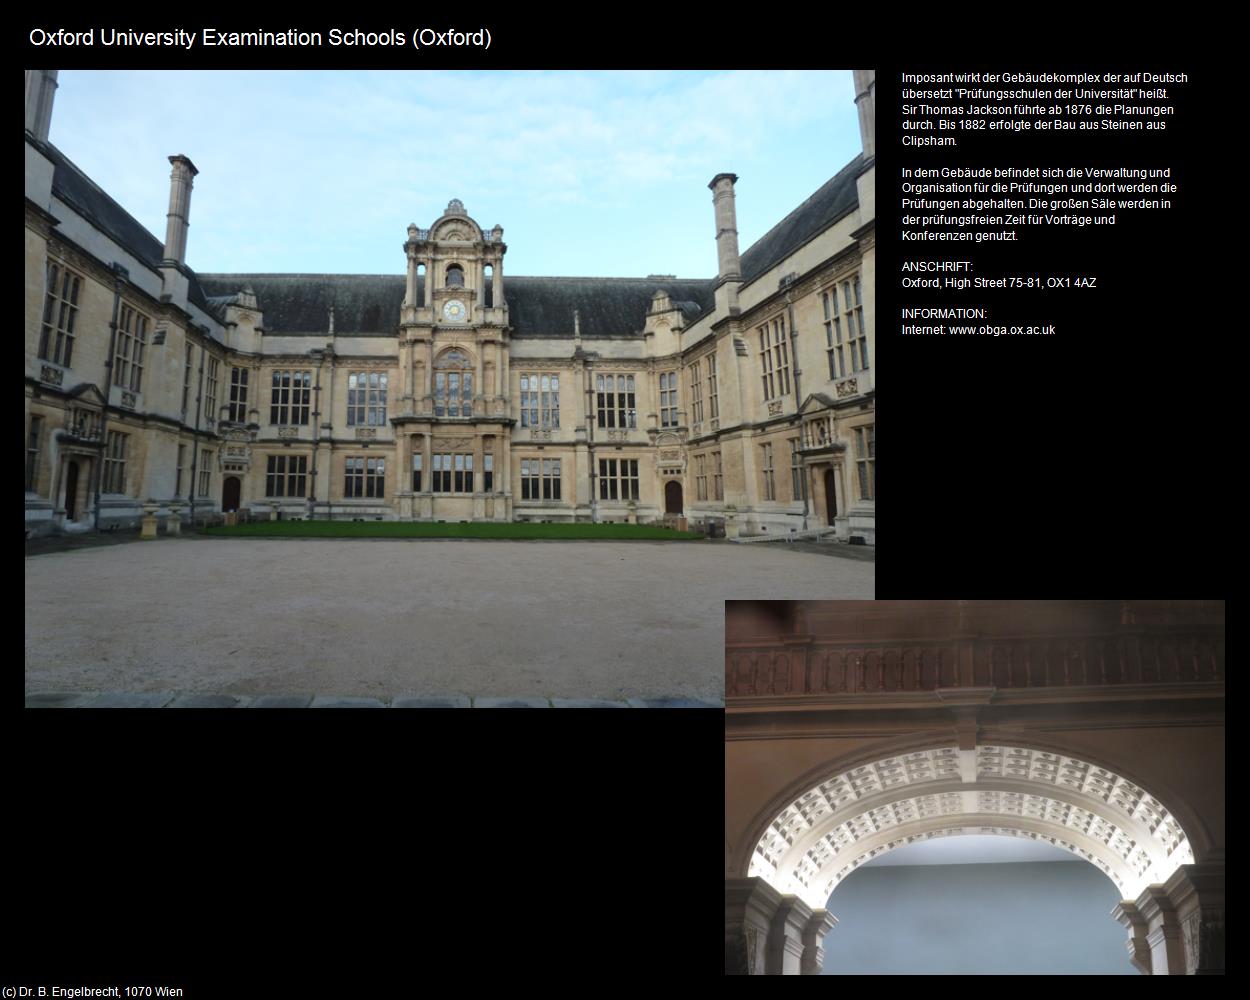 Oxford University Examination School (Oxford, England) in Kulturatlas-ENGLAND und WALES